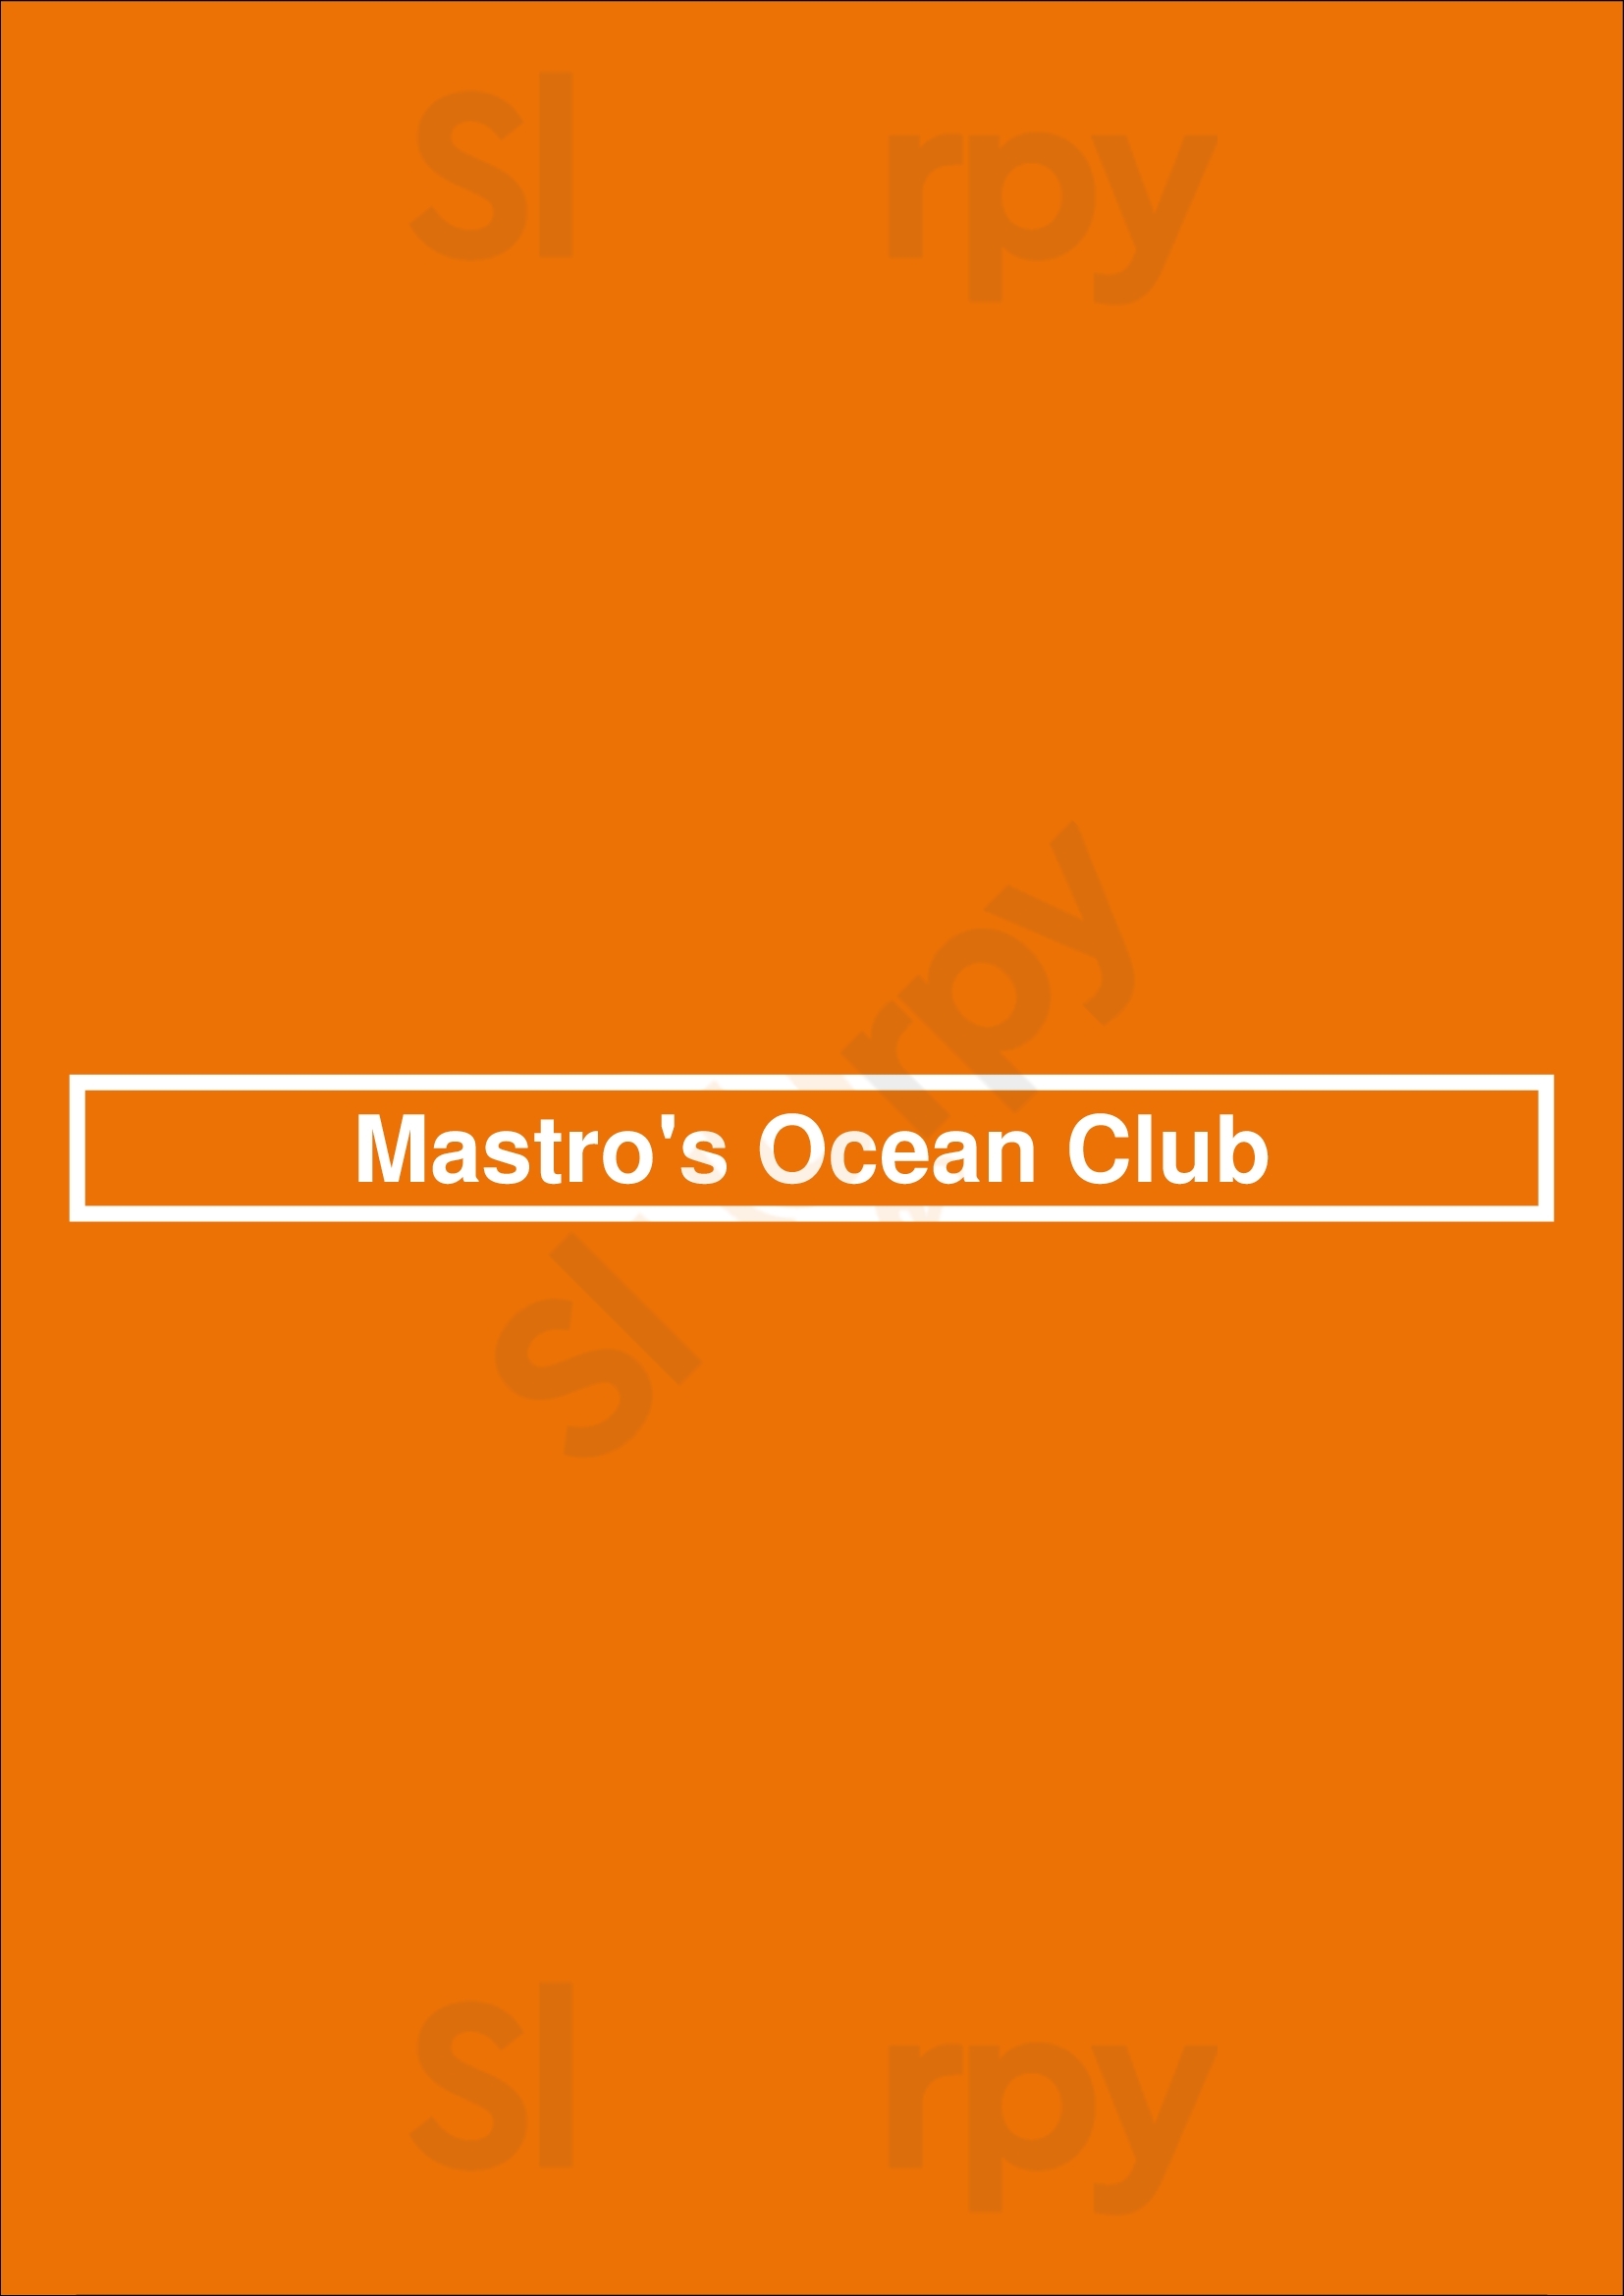 Mastro's Ocean Club Las Vegas Menu - 1